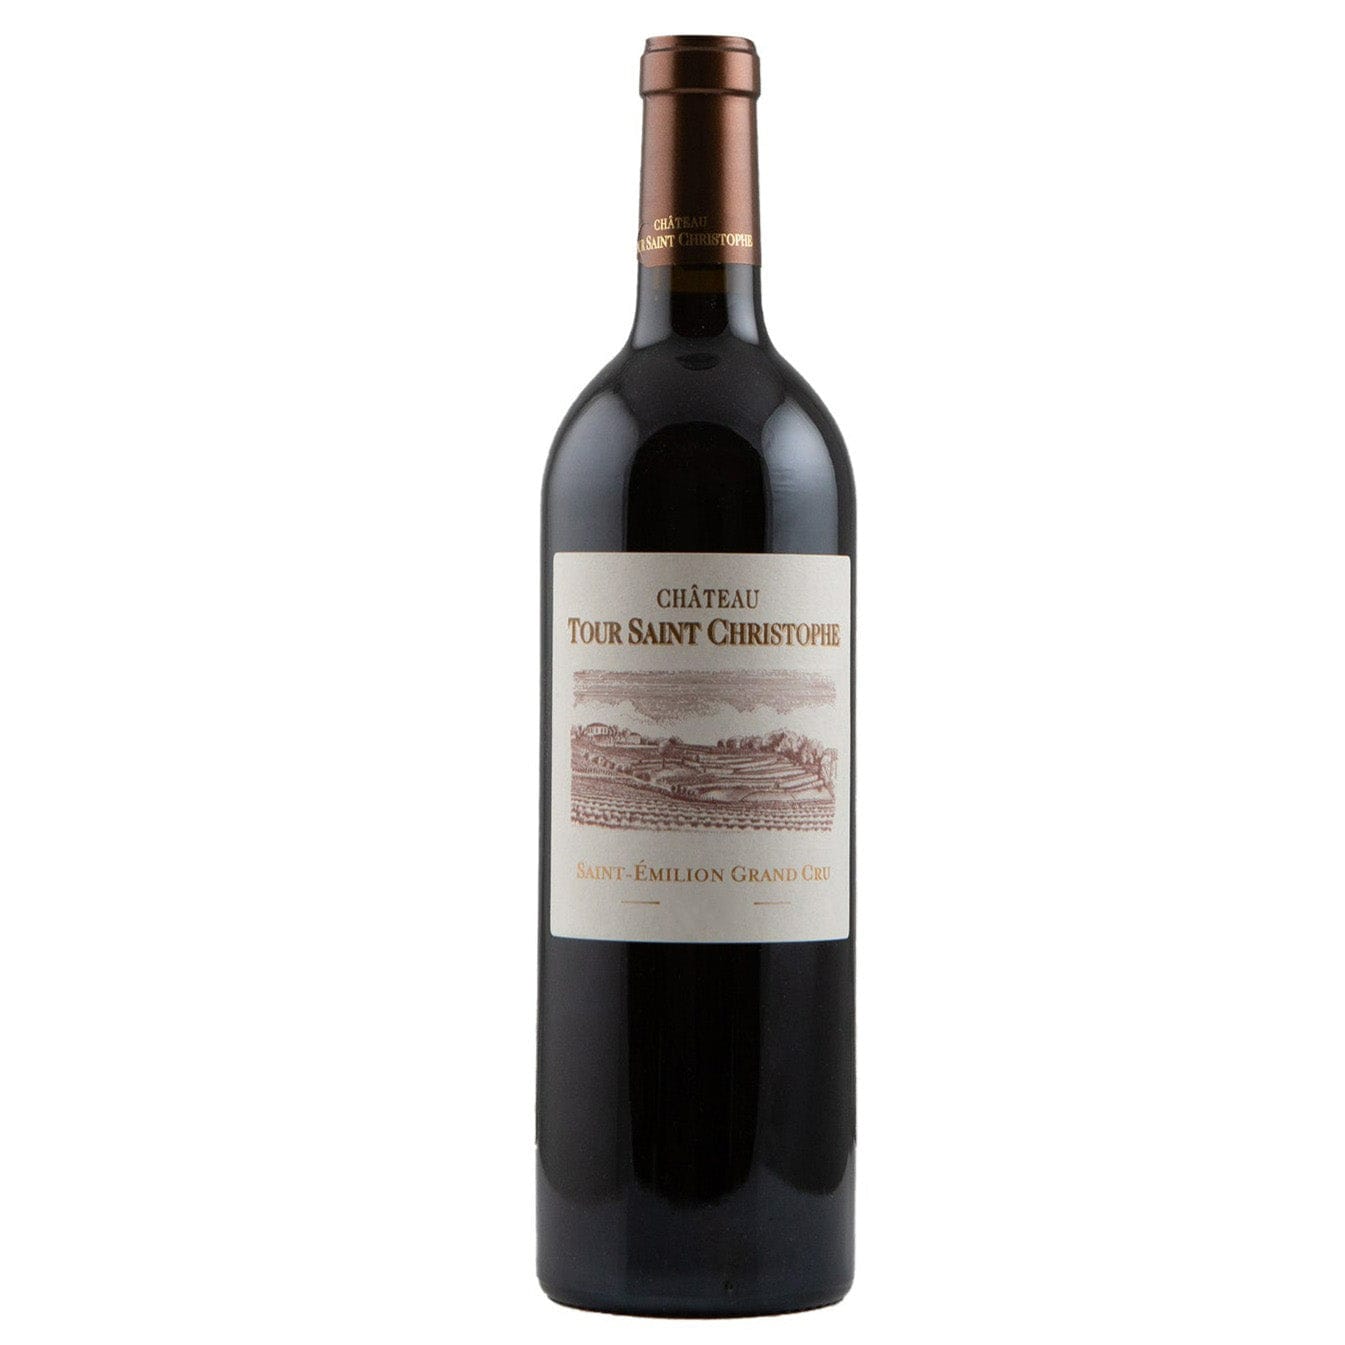 Single bottle of Red wine Ch. Tour Saint-Christophe, Grand Cru, Saint Emilion, 2015 80% Merlot and 20% Cabernet Franc